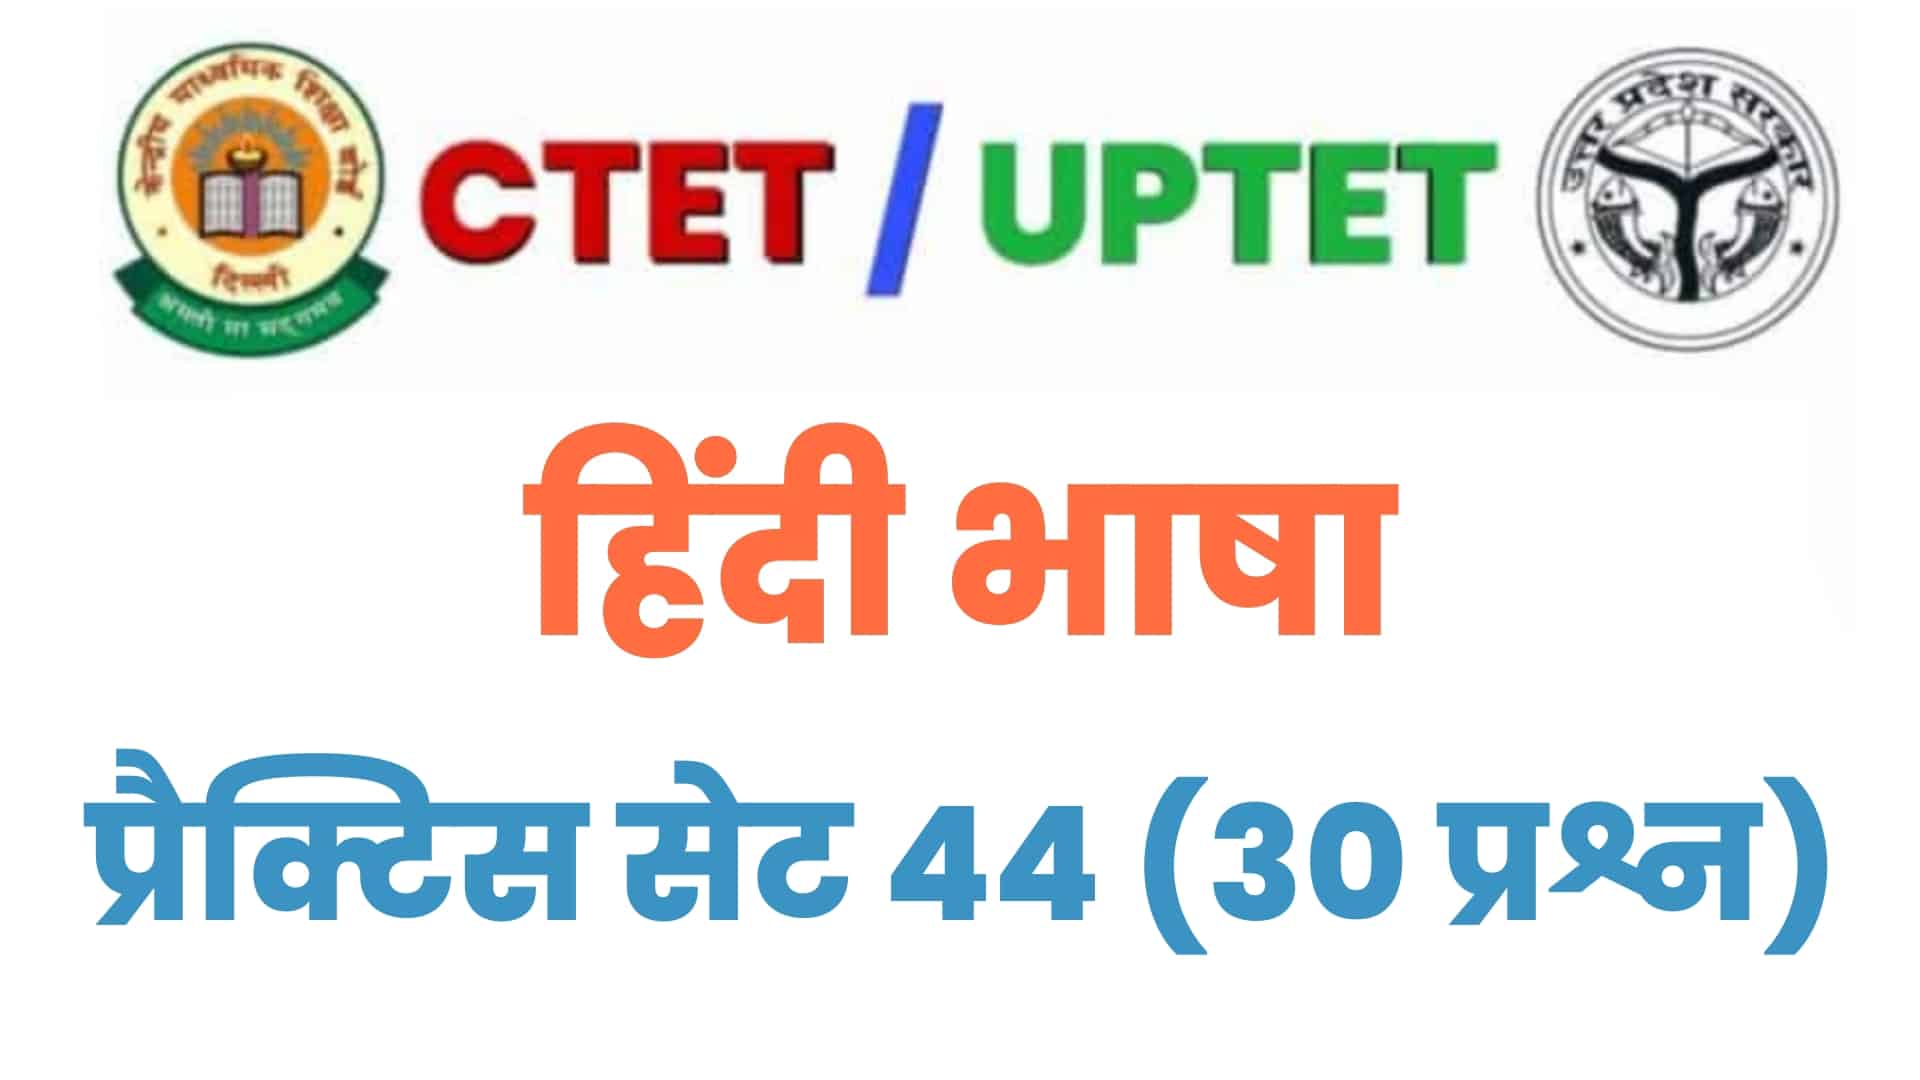 UPTET/CTET हिंदी भाषा प्रैक्टिस सेट 44 : परीक्षा में पूछे गए विगत वर्षों के इन 30 महत्वपूर्ण प्रश्नों पर डालें एक नज़र